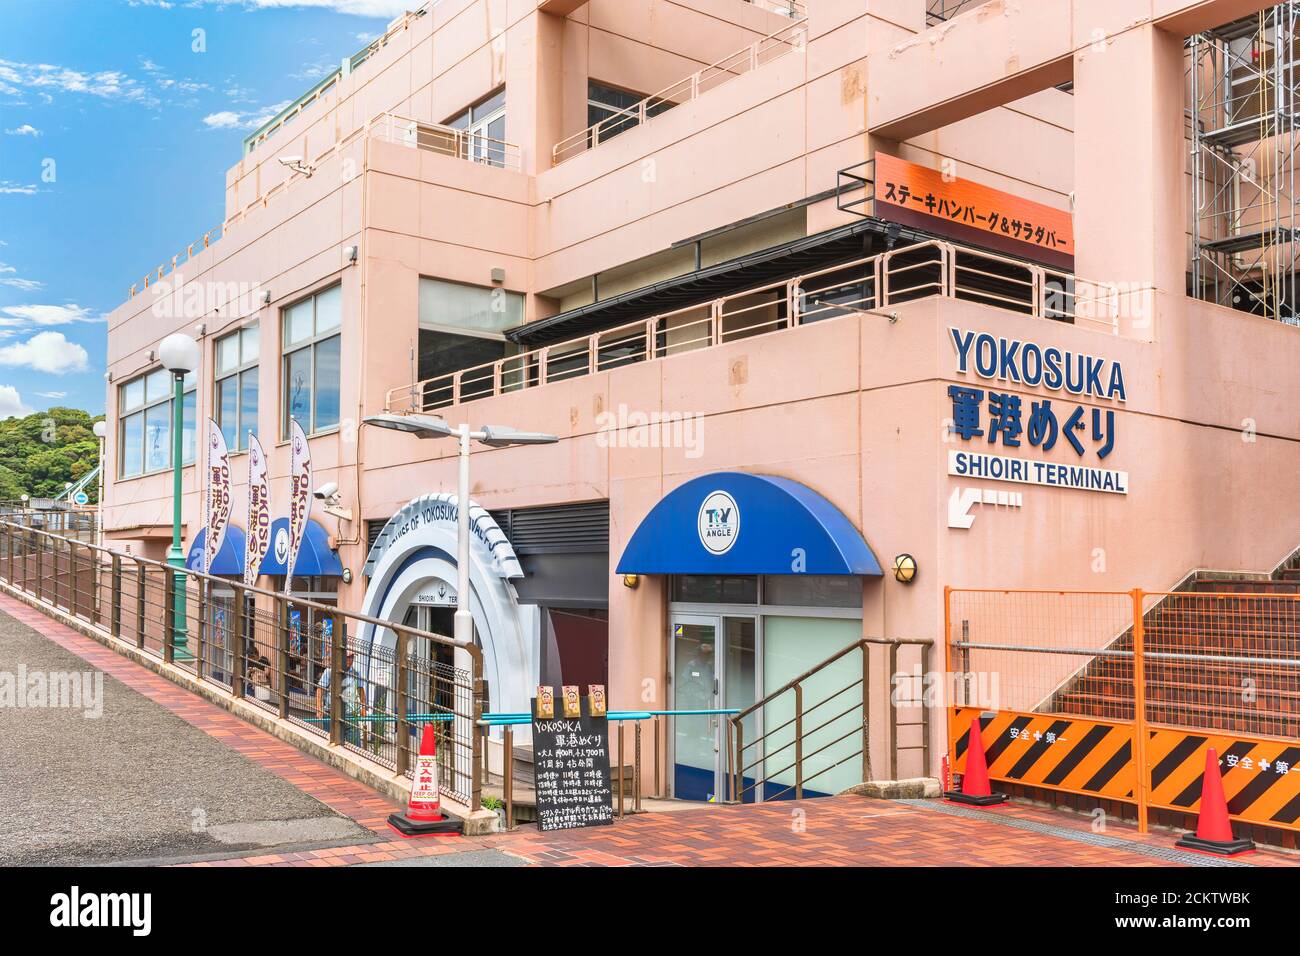 yokosuka, giappone - luglio 19 2020: Ingresso al centro commerciale Plaza Yokosuka con banco della crociera del Porto Navale di Yokosuka a Shioiri Foto Stock